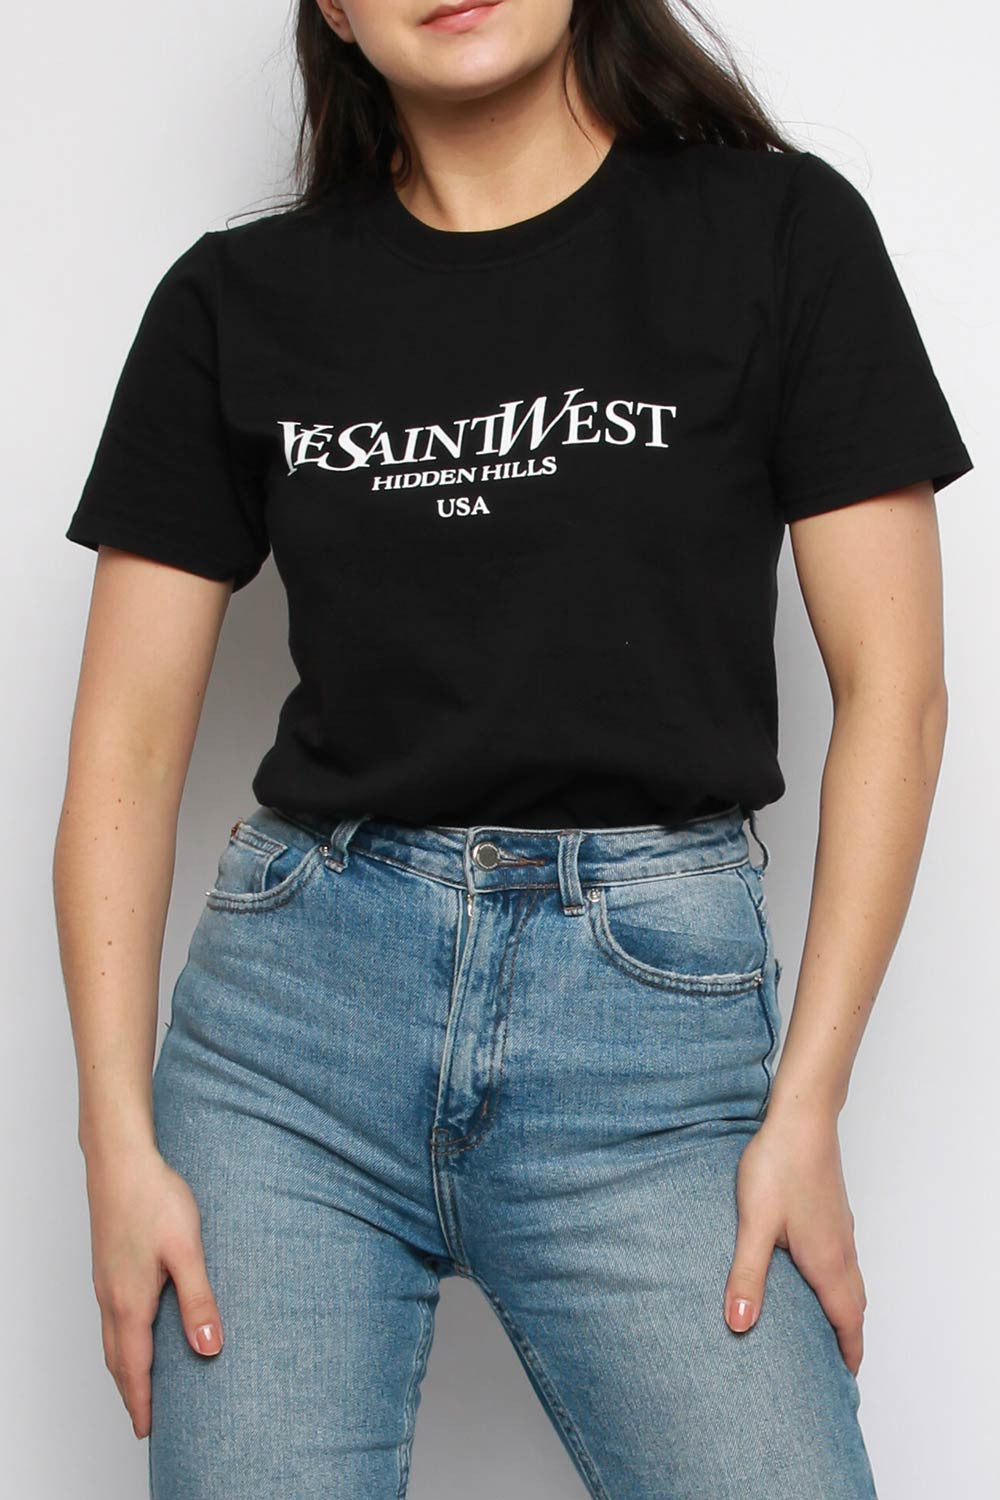 West Shirt